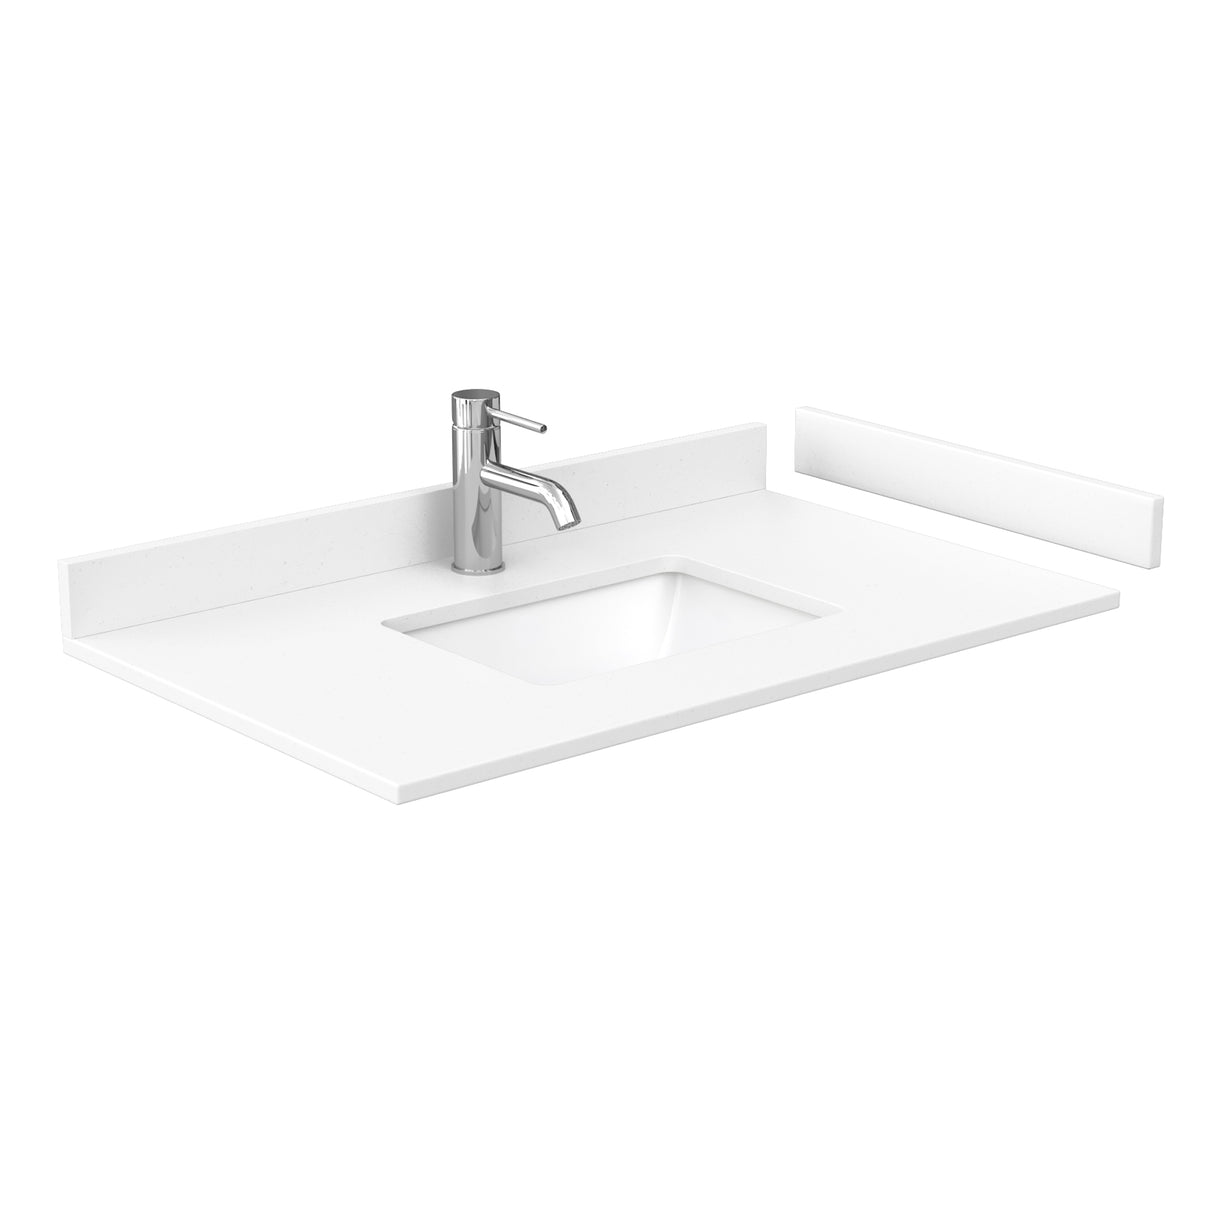 Deborah 36 Inch Single Bathroom Vanity in Dark Espresso White Cultured Marble Countertop Undermount Square Sink Medicine Cabinet